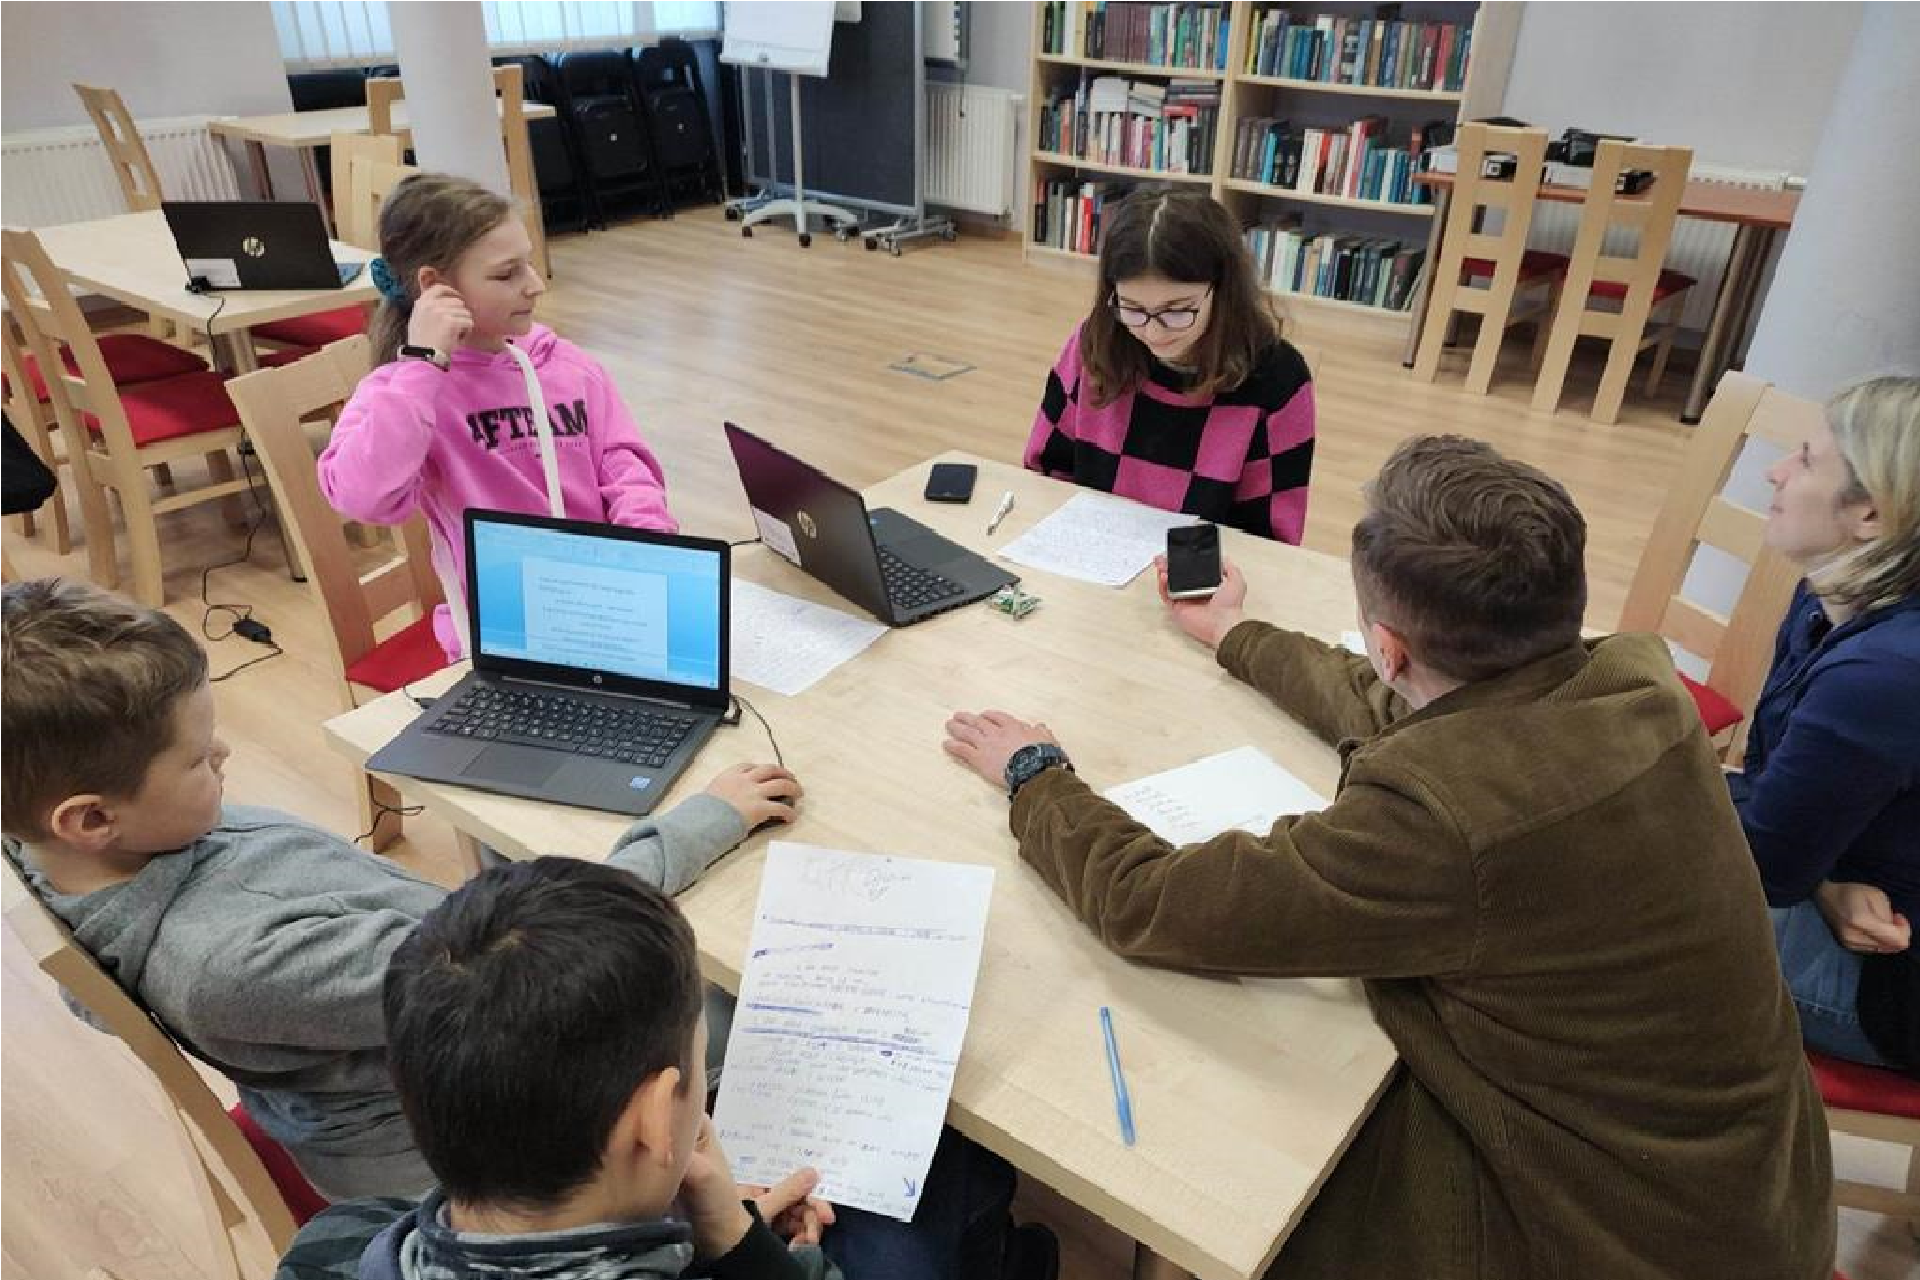 6 osób - dwóch chłopców, dwie dziewczyny, kobieta i mężczyzna siedzą przy stole w bibliotecznej czytelni. Na stole stoją dwa laptopy. Mężczyzna trzyma w ręku telefon i kieruje go w stronę jednej z dziewczyn.